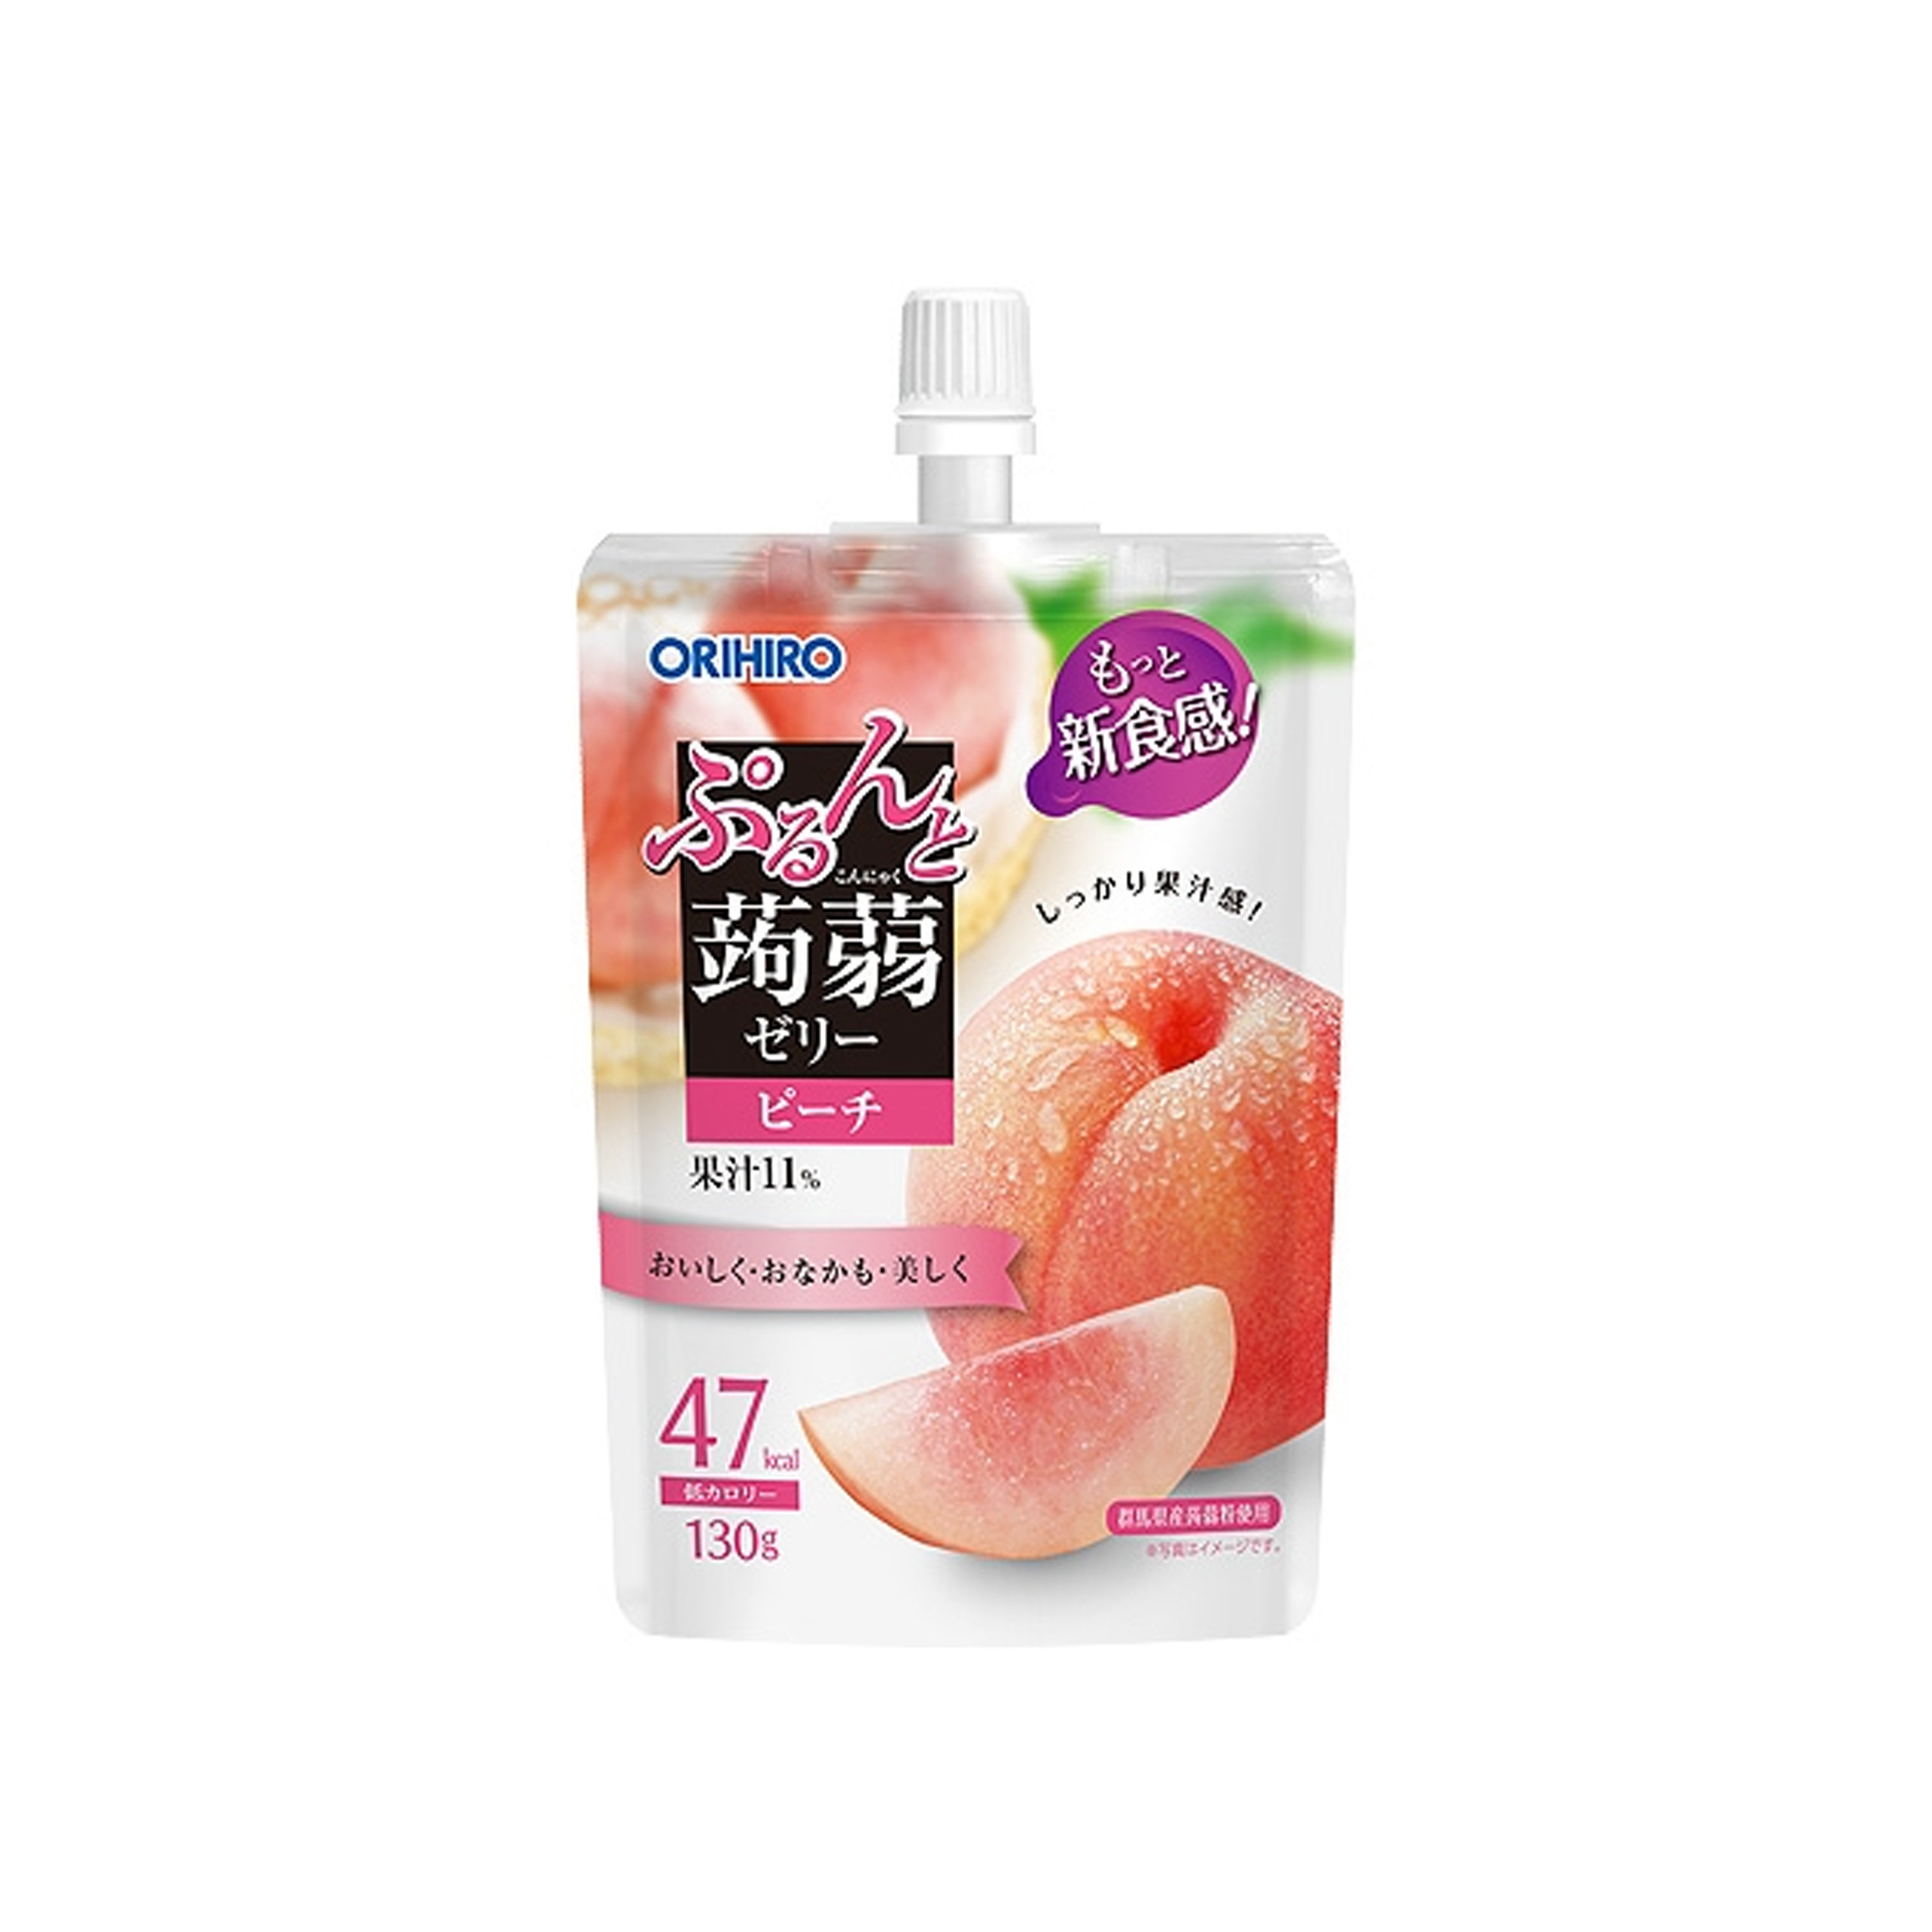 日本ORIHIRO | 低卡蒟蒻果冻 | 吸嘴袋型 | 白桃口味 | 130g | Orihiro-Konjac Jelly (Peach)